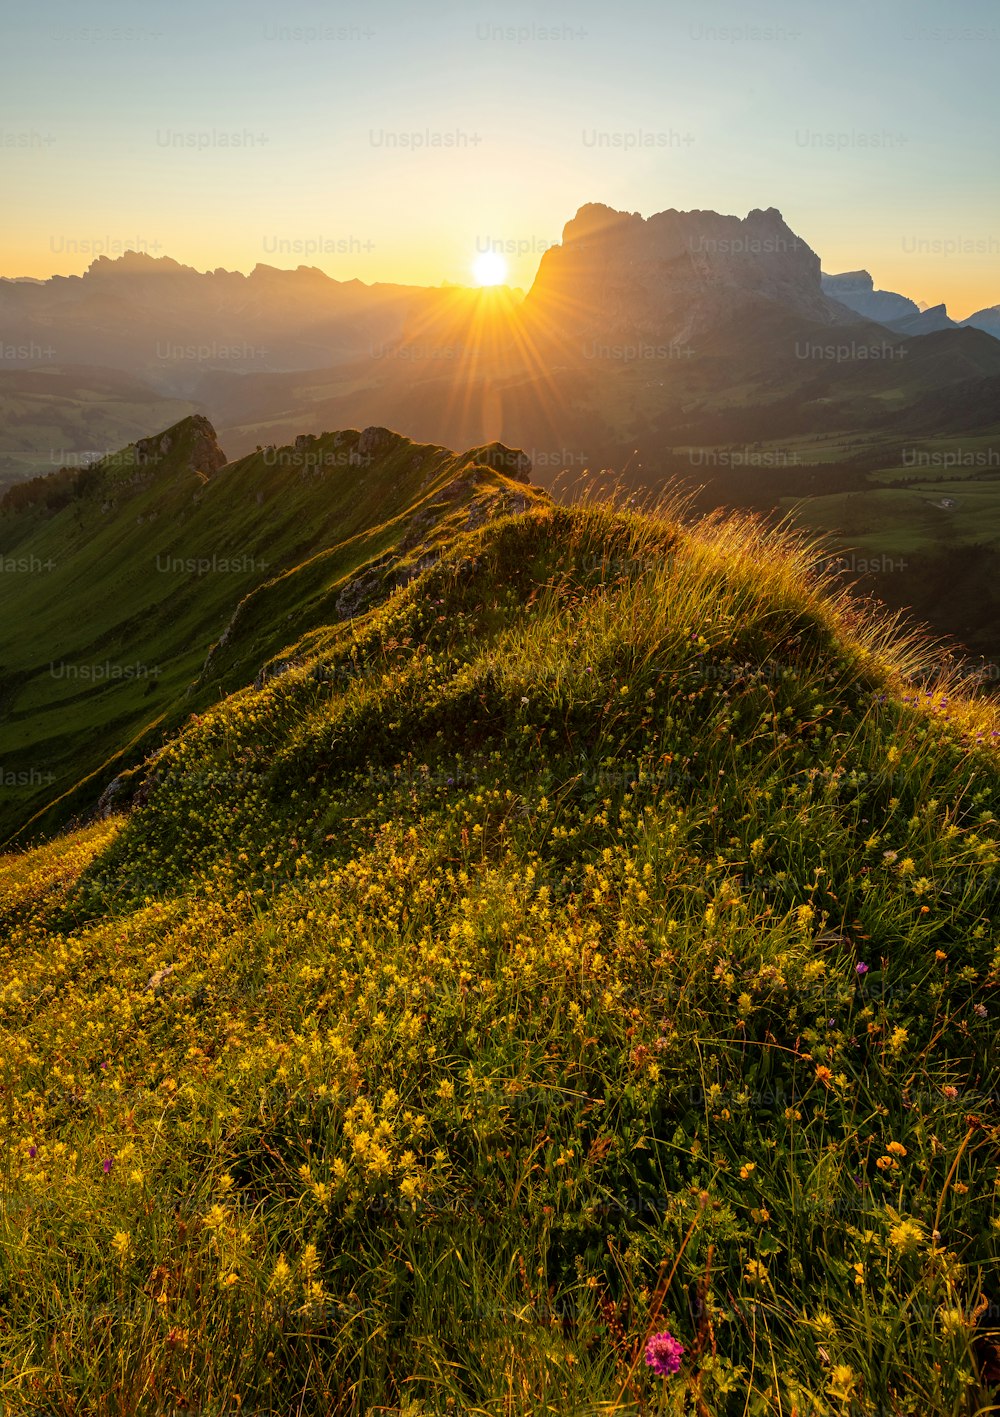 El sol se está poniendo sobre una colina cubierta de hierba